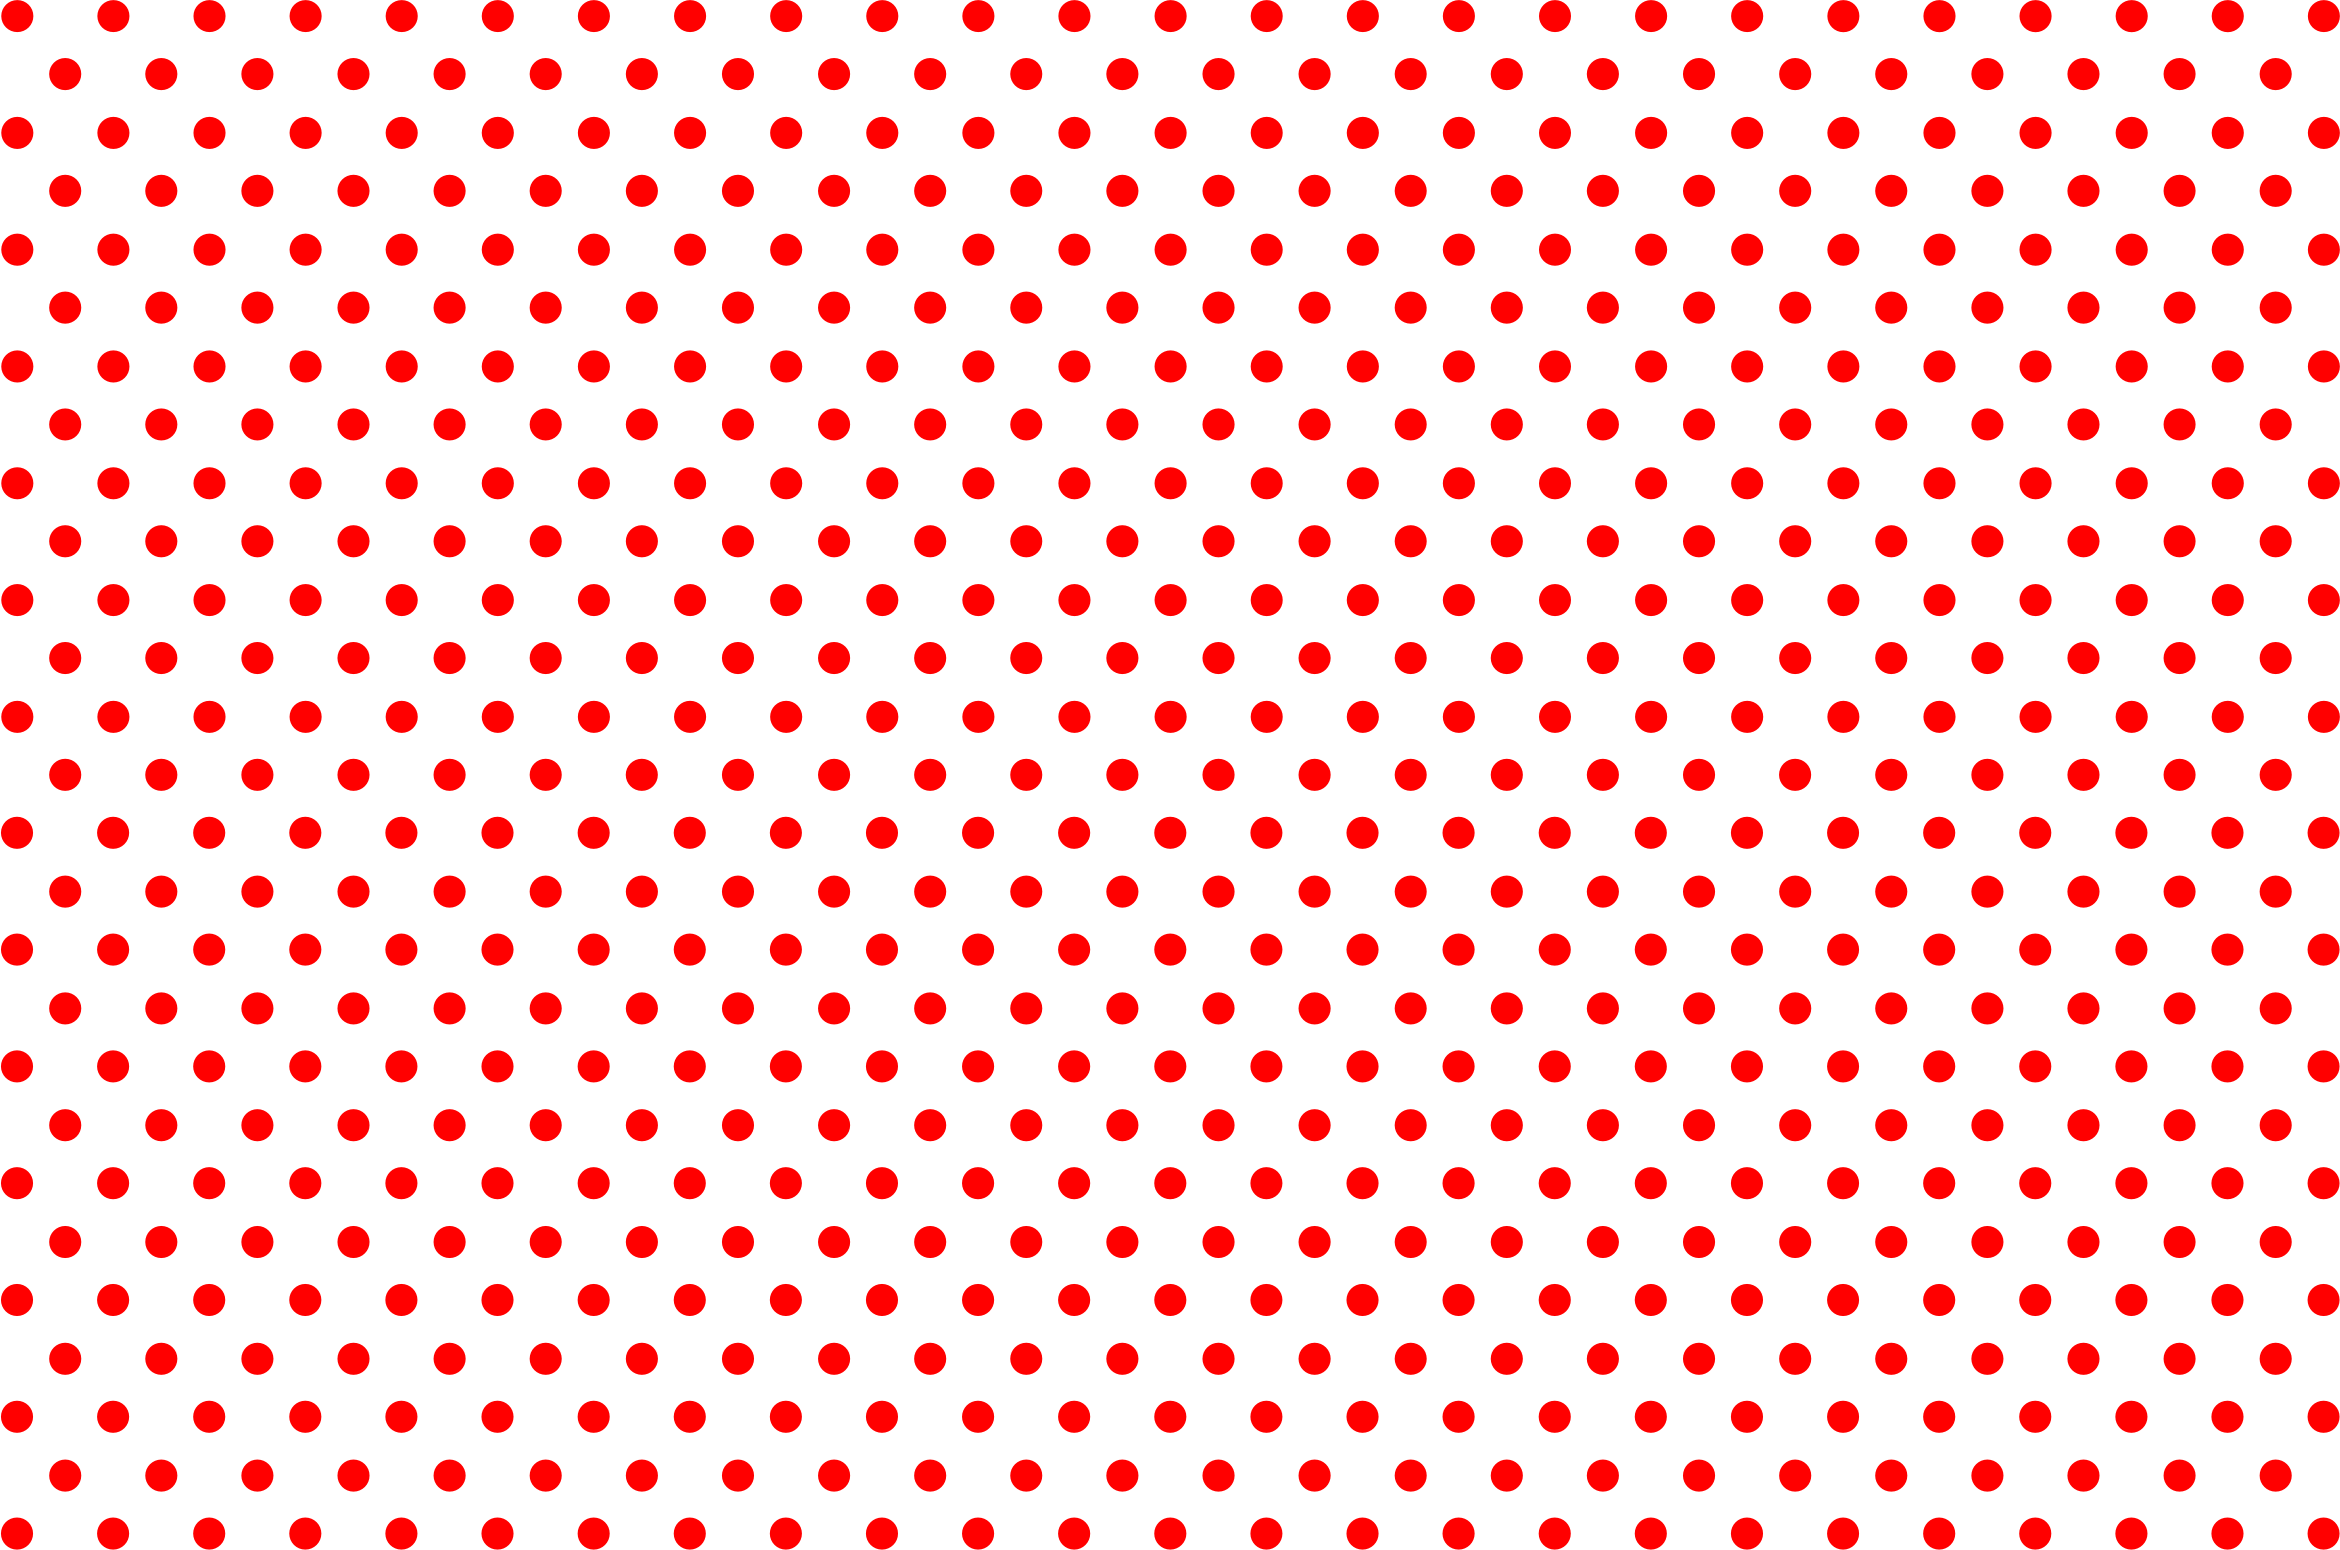 polka-dot-background-png-black-polka-dot-background-png-polka-d